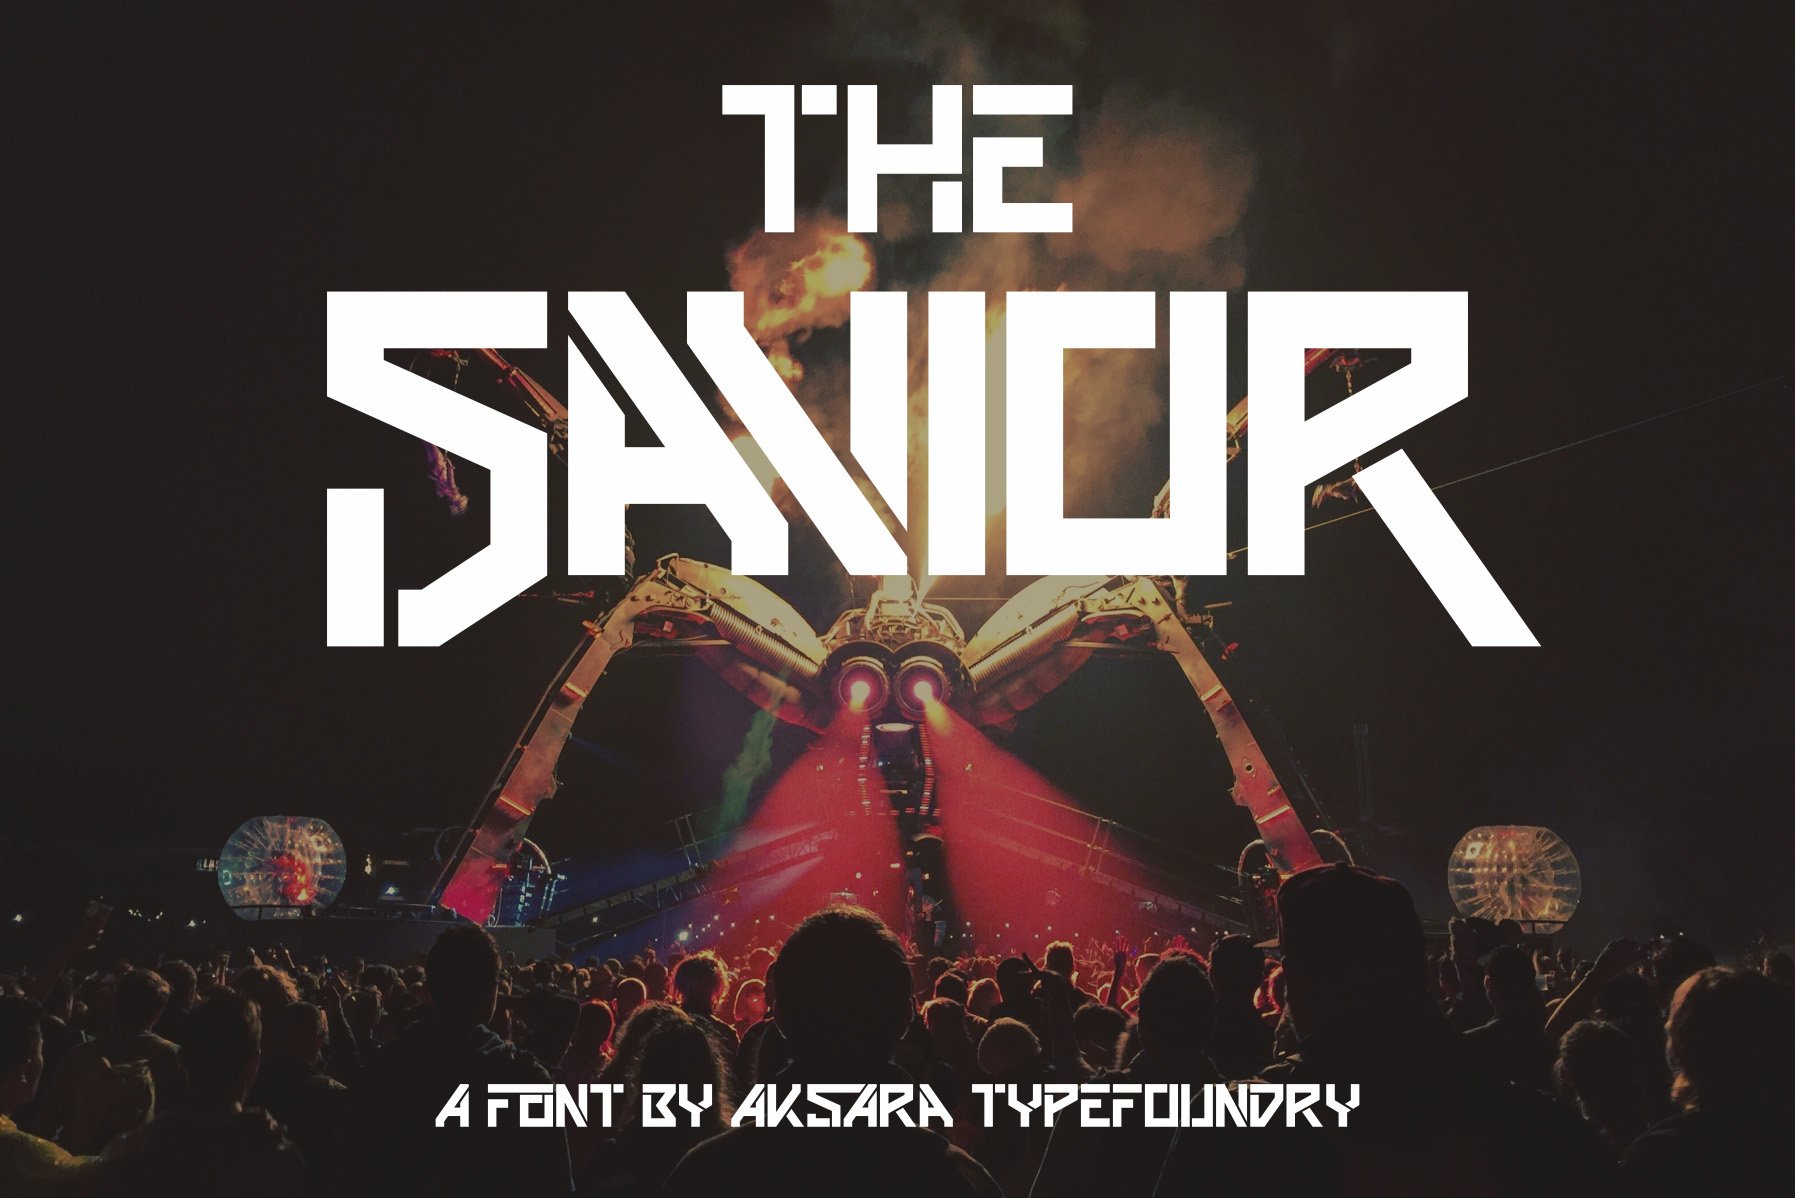 The Savior | Futuristic Font cover image.